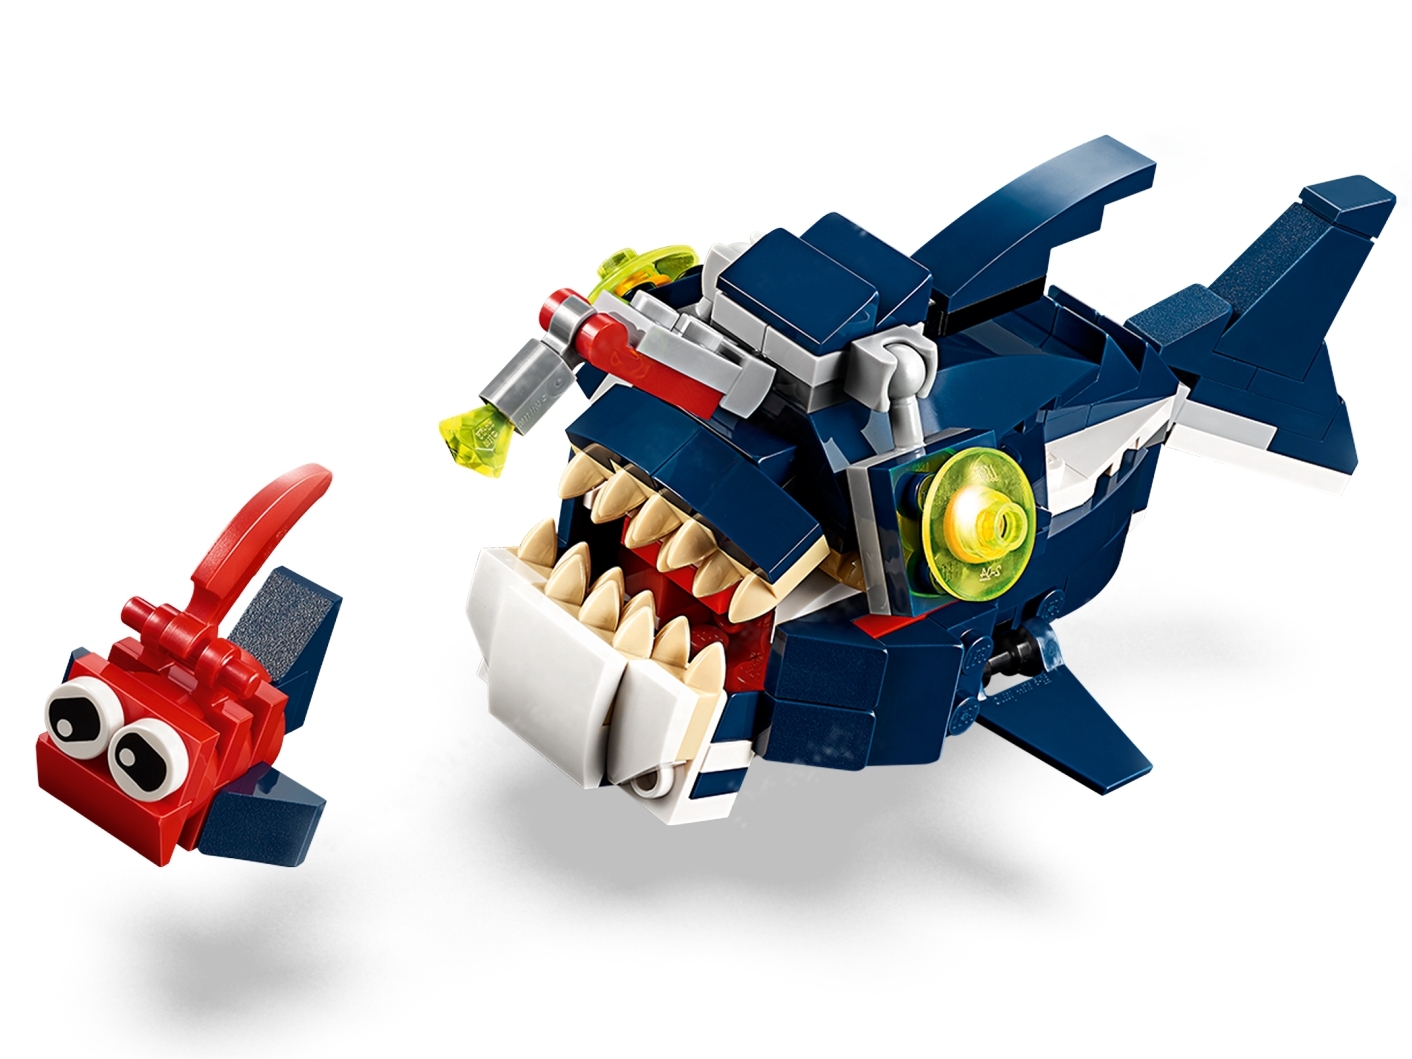 LEGO 31088 Creator 3-in-1 Bewohner der Tiefsee Set mit Hai, Krabbe + Schatztruhe